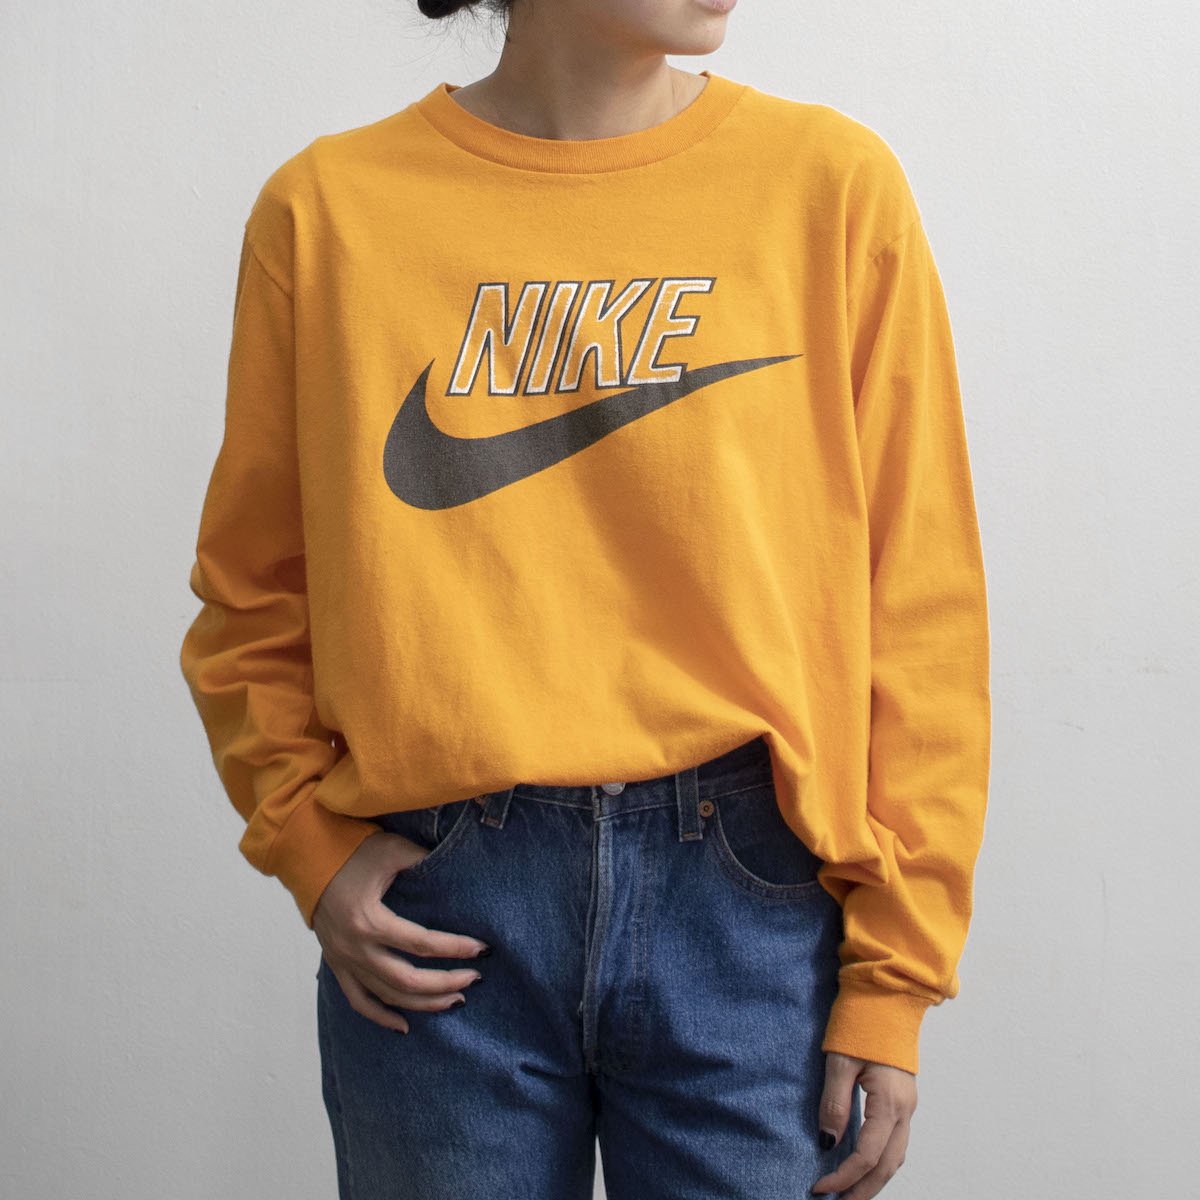 [レディース] 1980s ヴィンテージ 紺タグ ナイキ ビッグサイズ ロゴプリント ロングTシャツ オレンジ [NIKE]